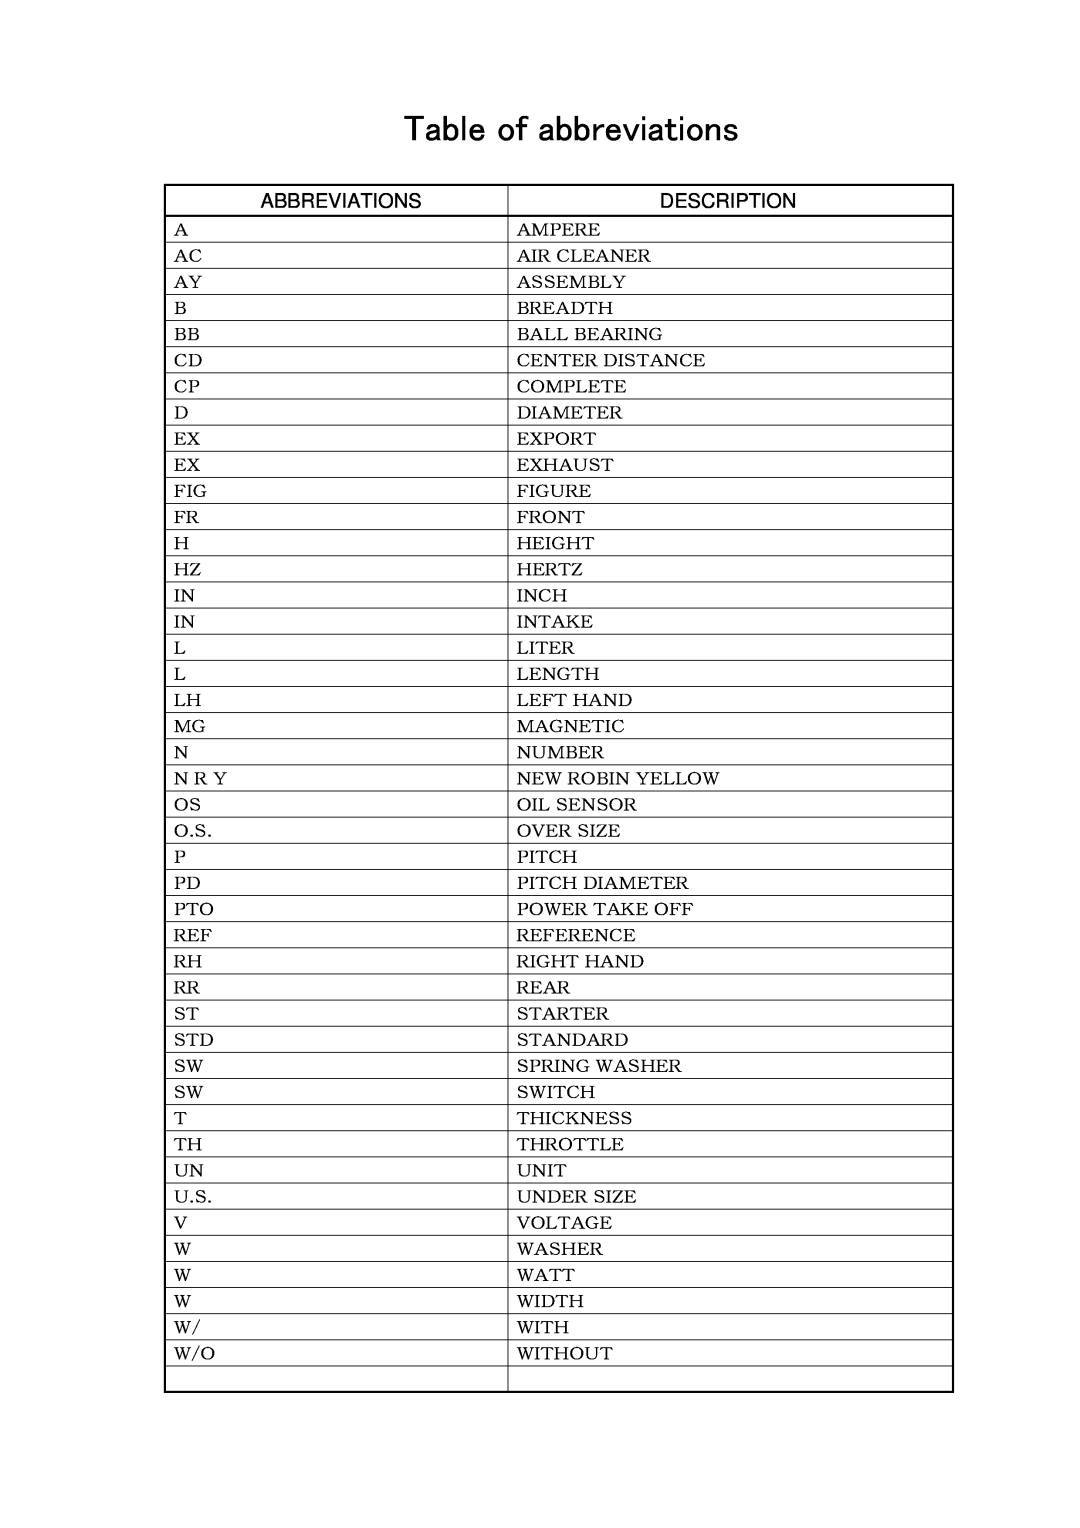 Subaru Robin Power Products P4300ie manual Table of abbreviations, Abbreviations, Description 